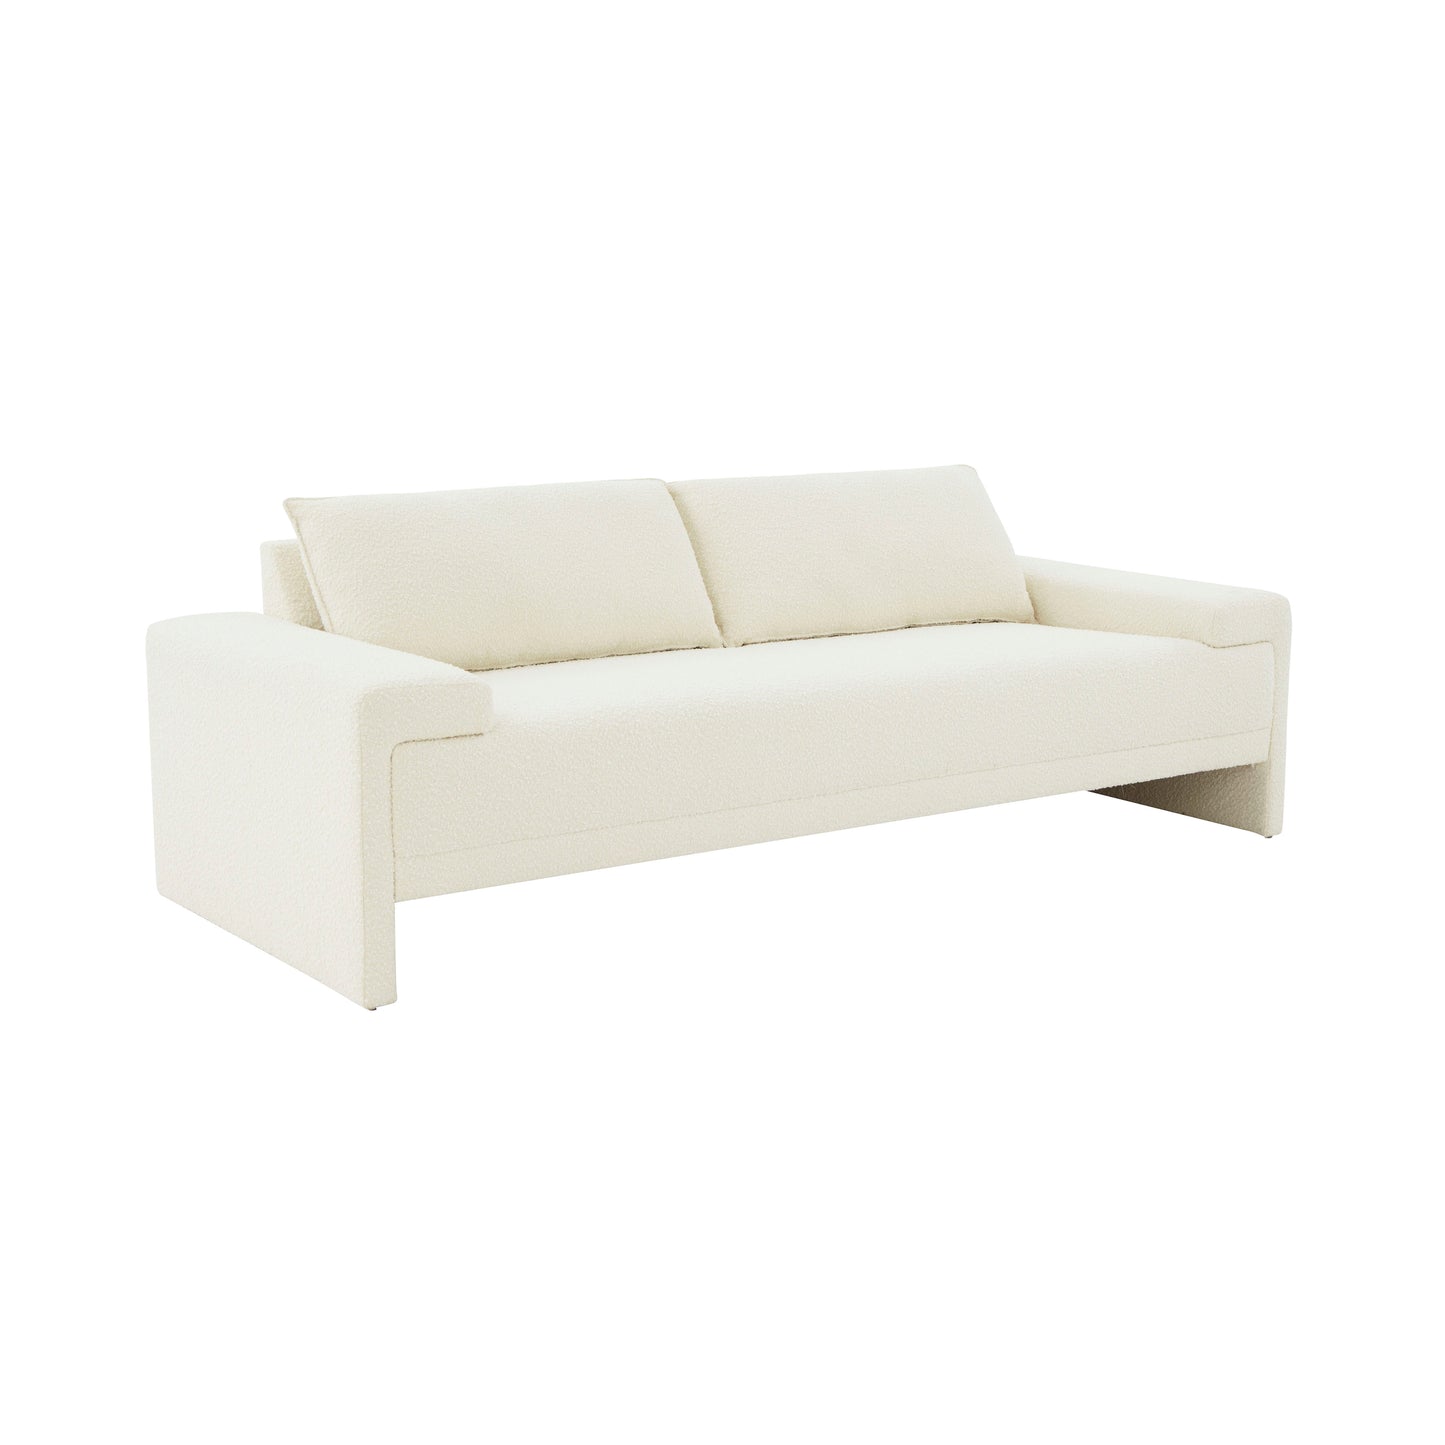 Tov Furniture Maeve Cream Boucle Sofa